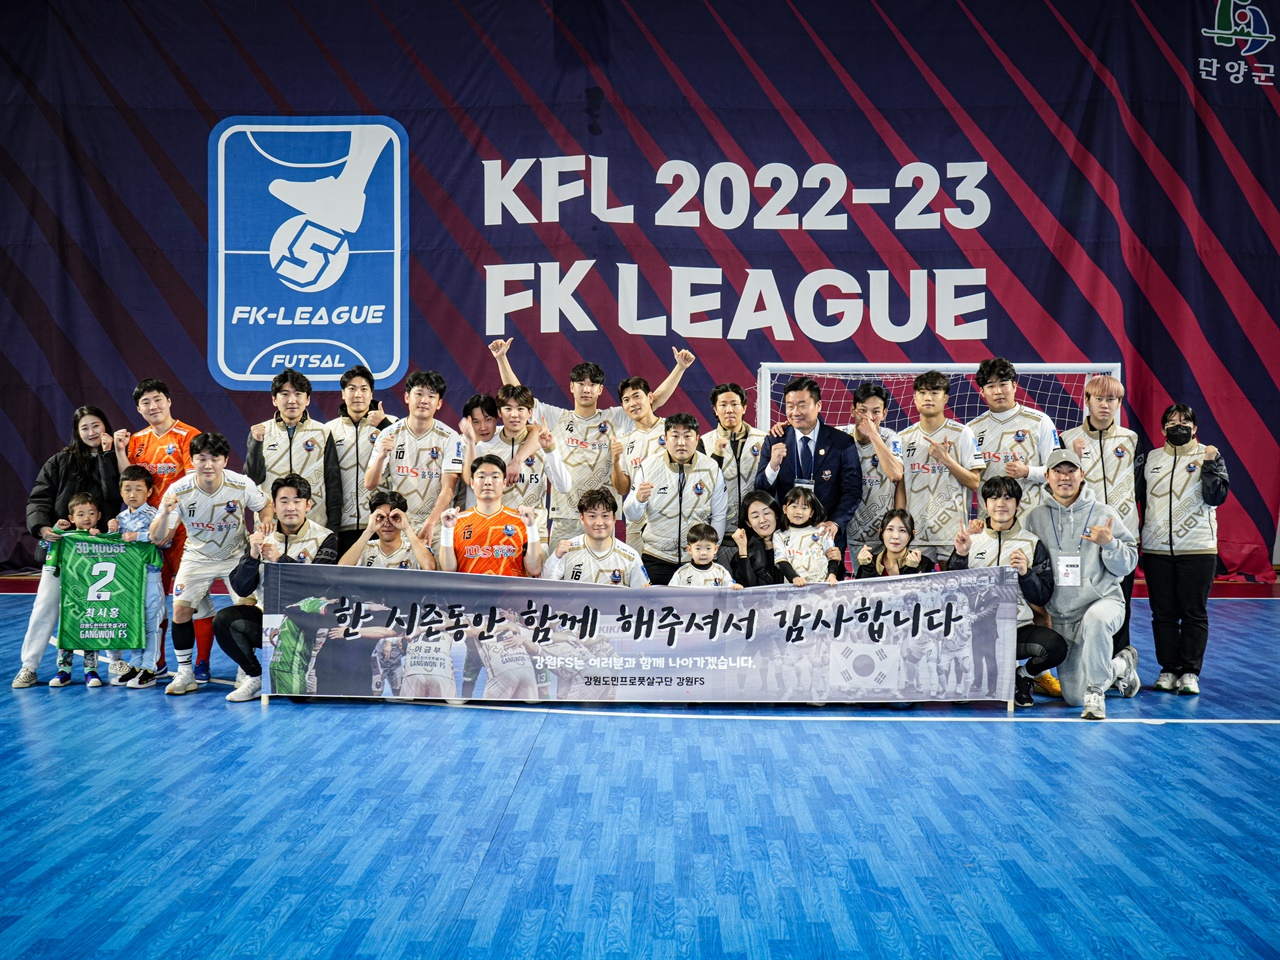 승강플레이오프로 진출한 강원FS 강원FS 선수단과 가족들이 정규시즌 종료 후 단체사진을 촬영하고 있다.